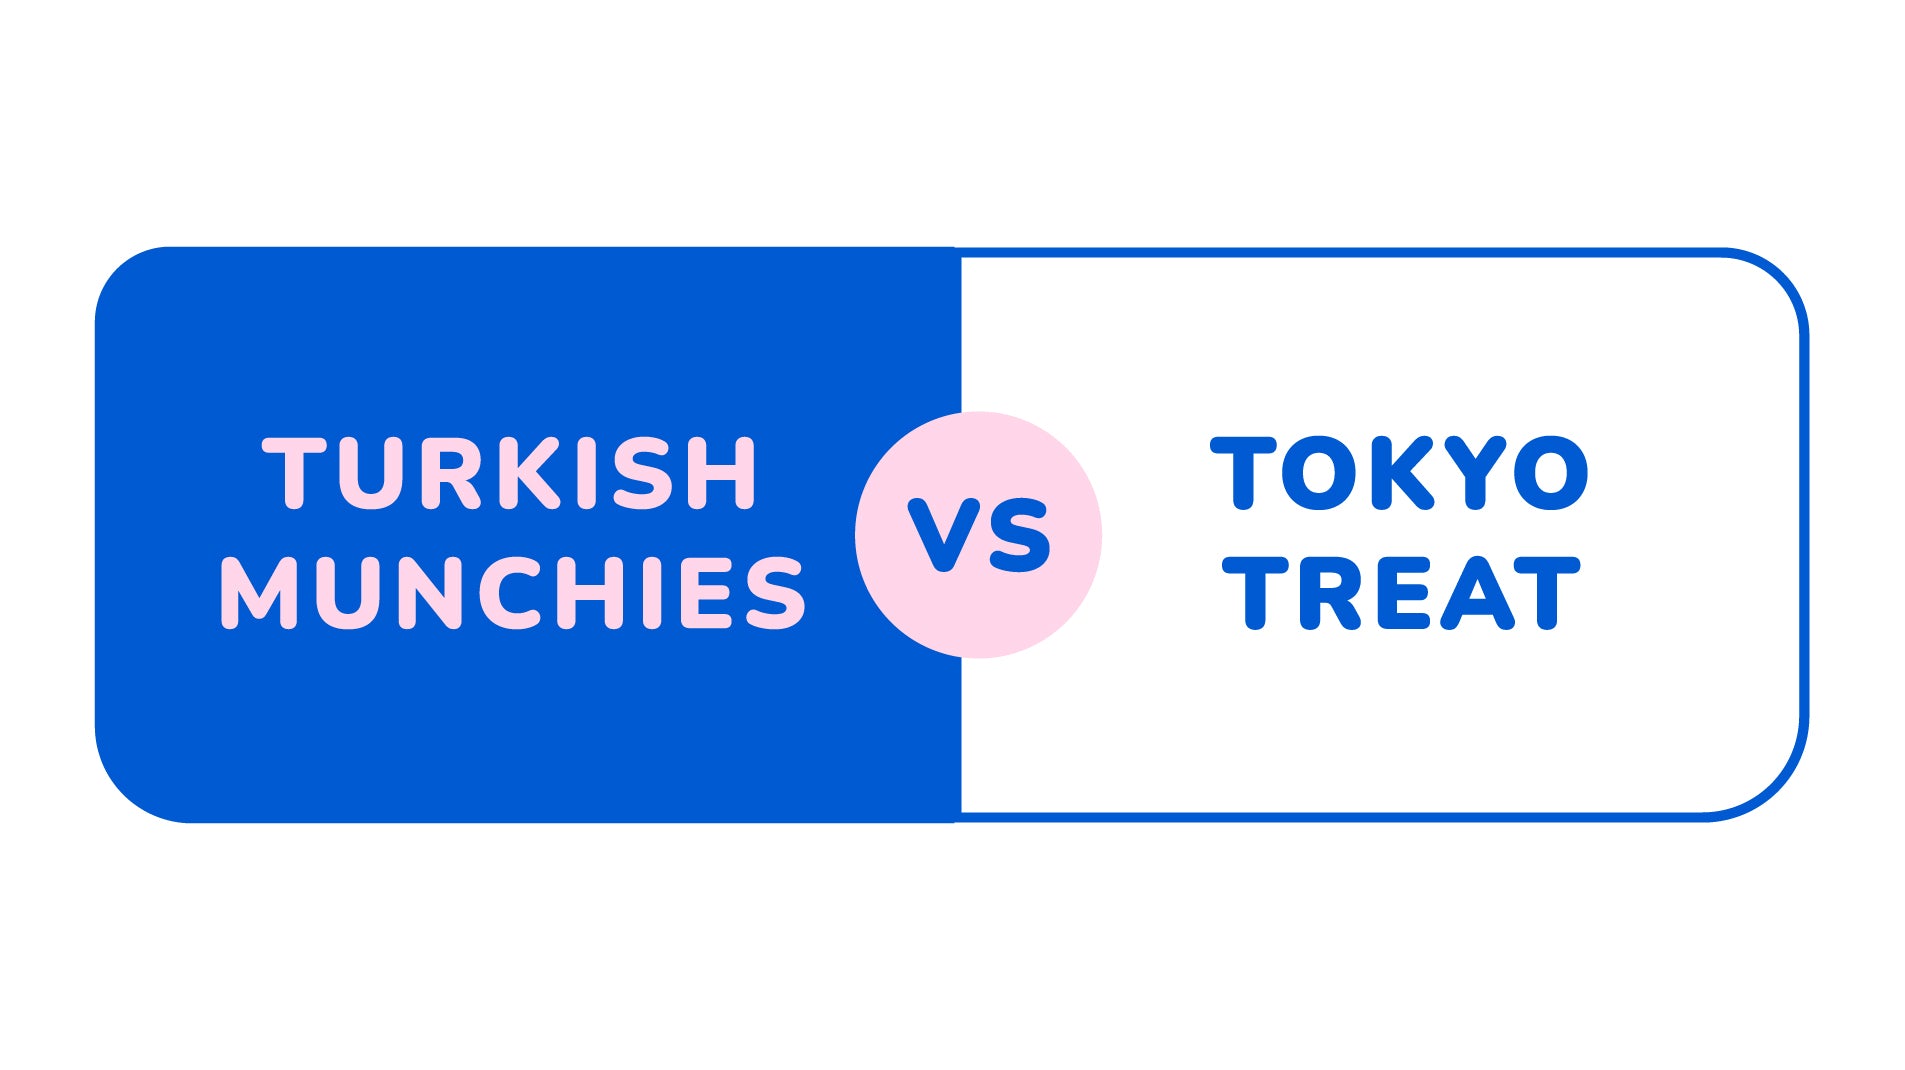 Turkish Munchies vs Tokyo Treat